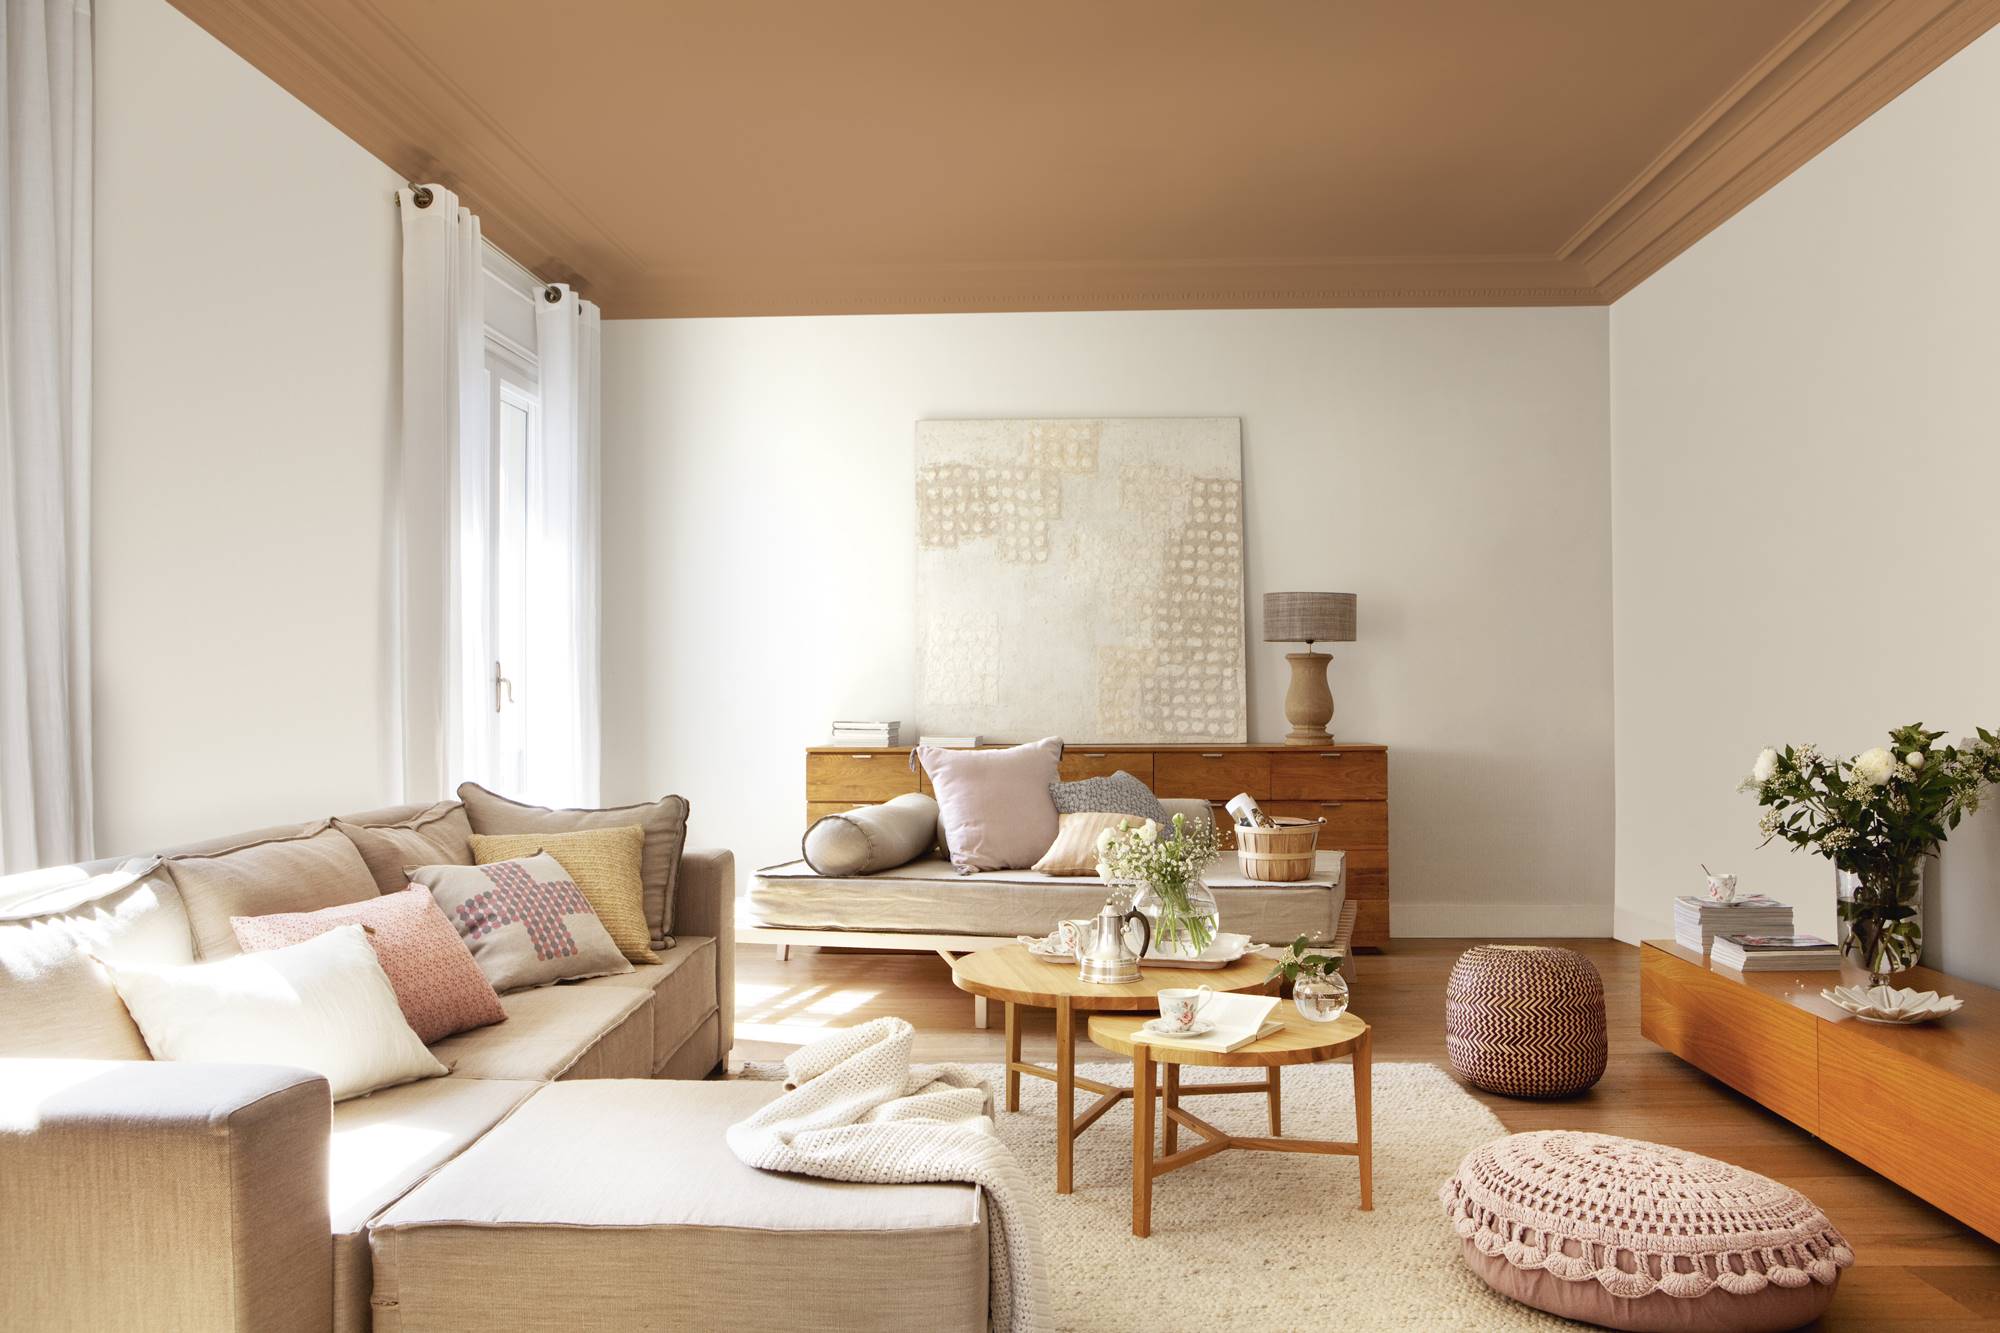 Salón con paredes blancas y techo marrón, sofá con chaise longue, mesas de centro nido redondas, pufs rosas y mueble vintage con cuadro